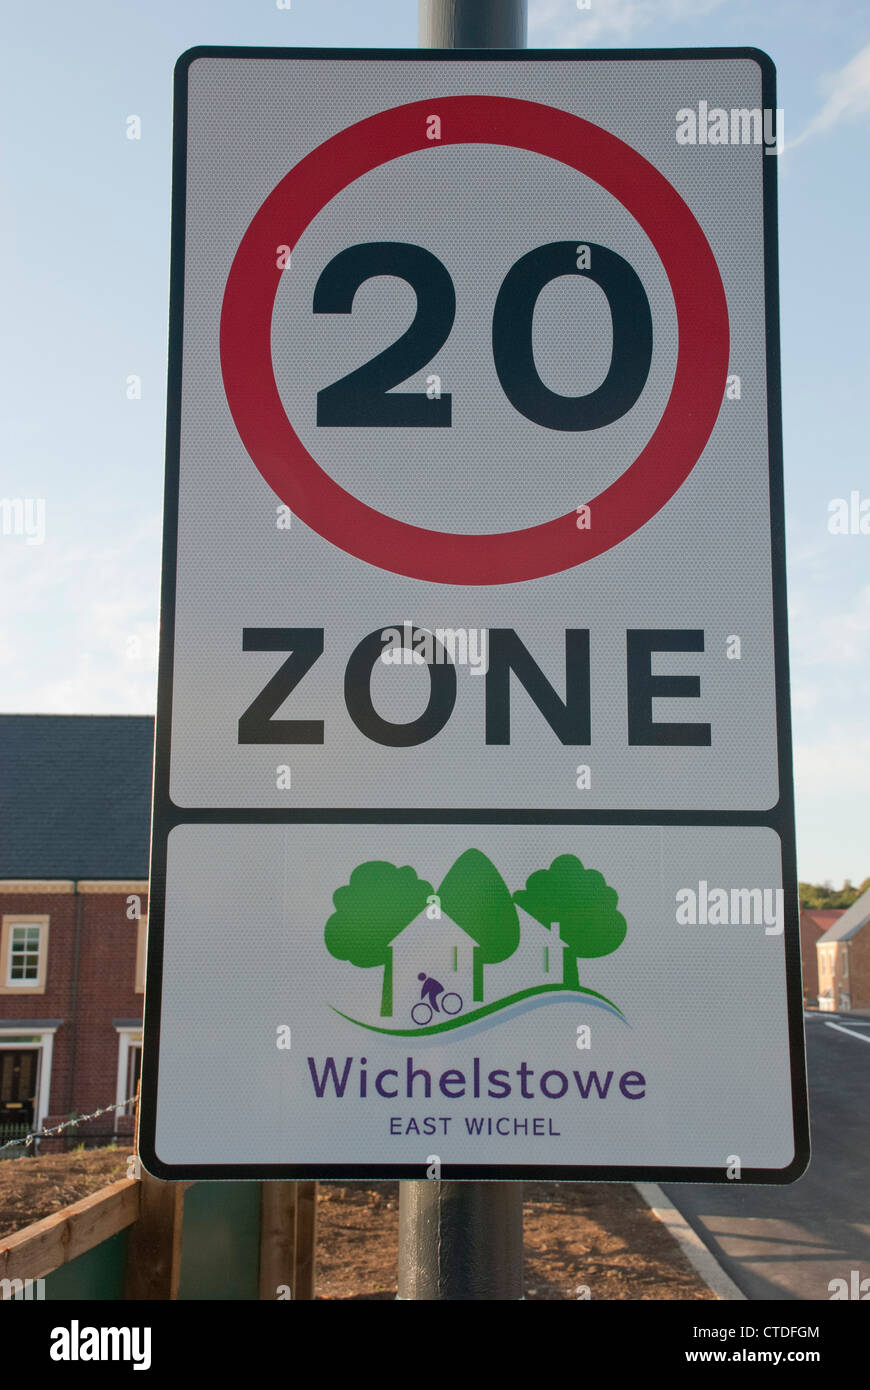 Une limite de vitesse de 20mph signe sur l'route d'entrée à l'Est de l'Wichelstowe Wichel Swindon dans le développement. Banque D'Images